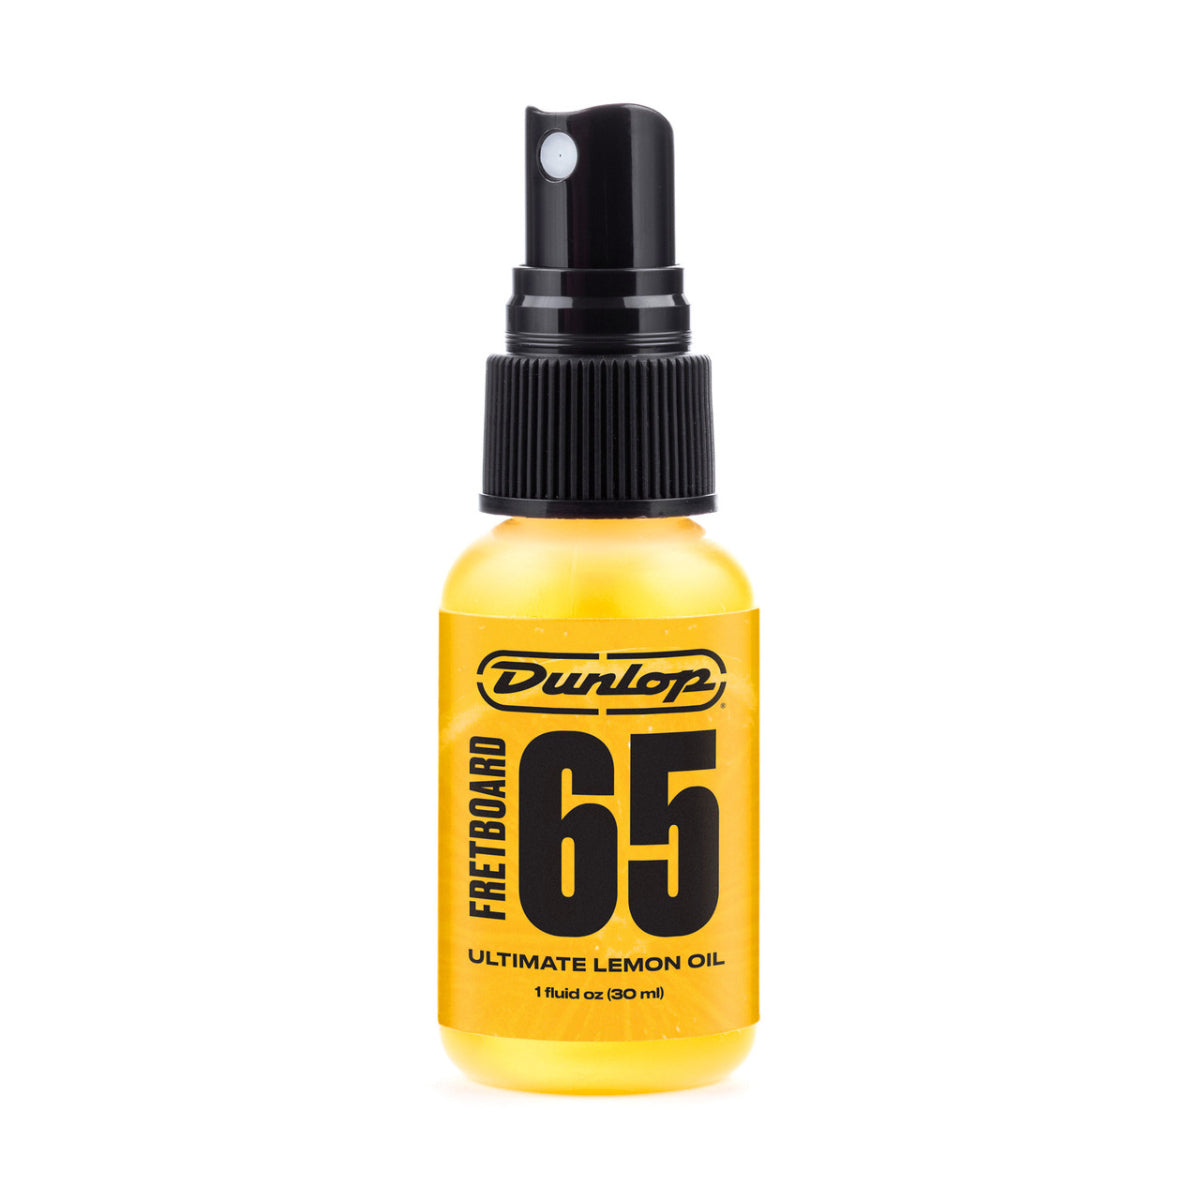 65 Ultimate Lemon Oil - 1oz bottle